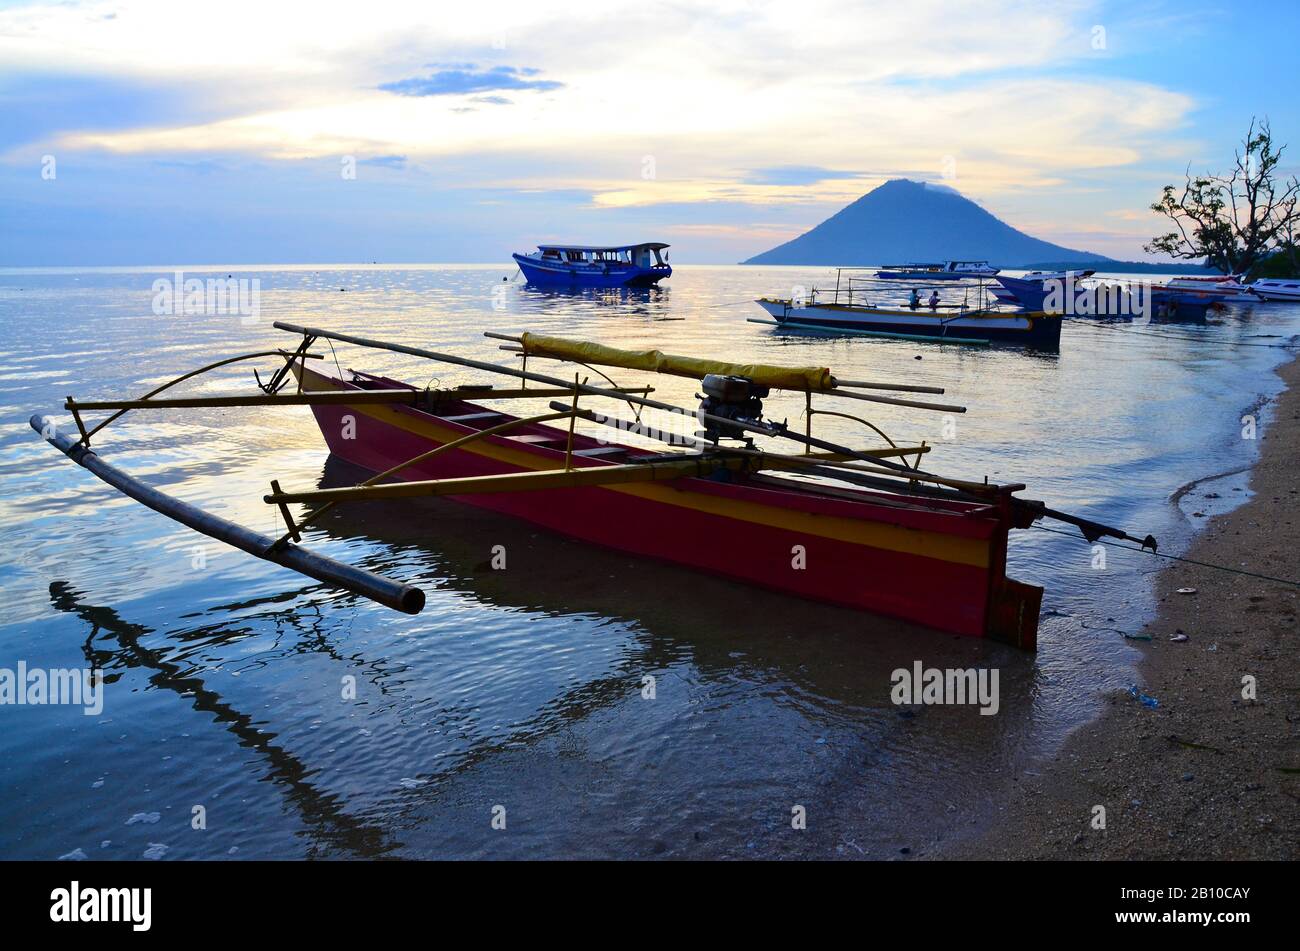 Dugotta in barca di fronte al vulcano Manado Tua, il Parco Nazionale di Bunaken, Sulawesi, Indonesia Foto Stock